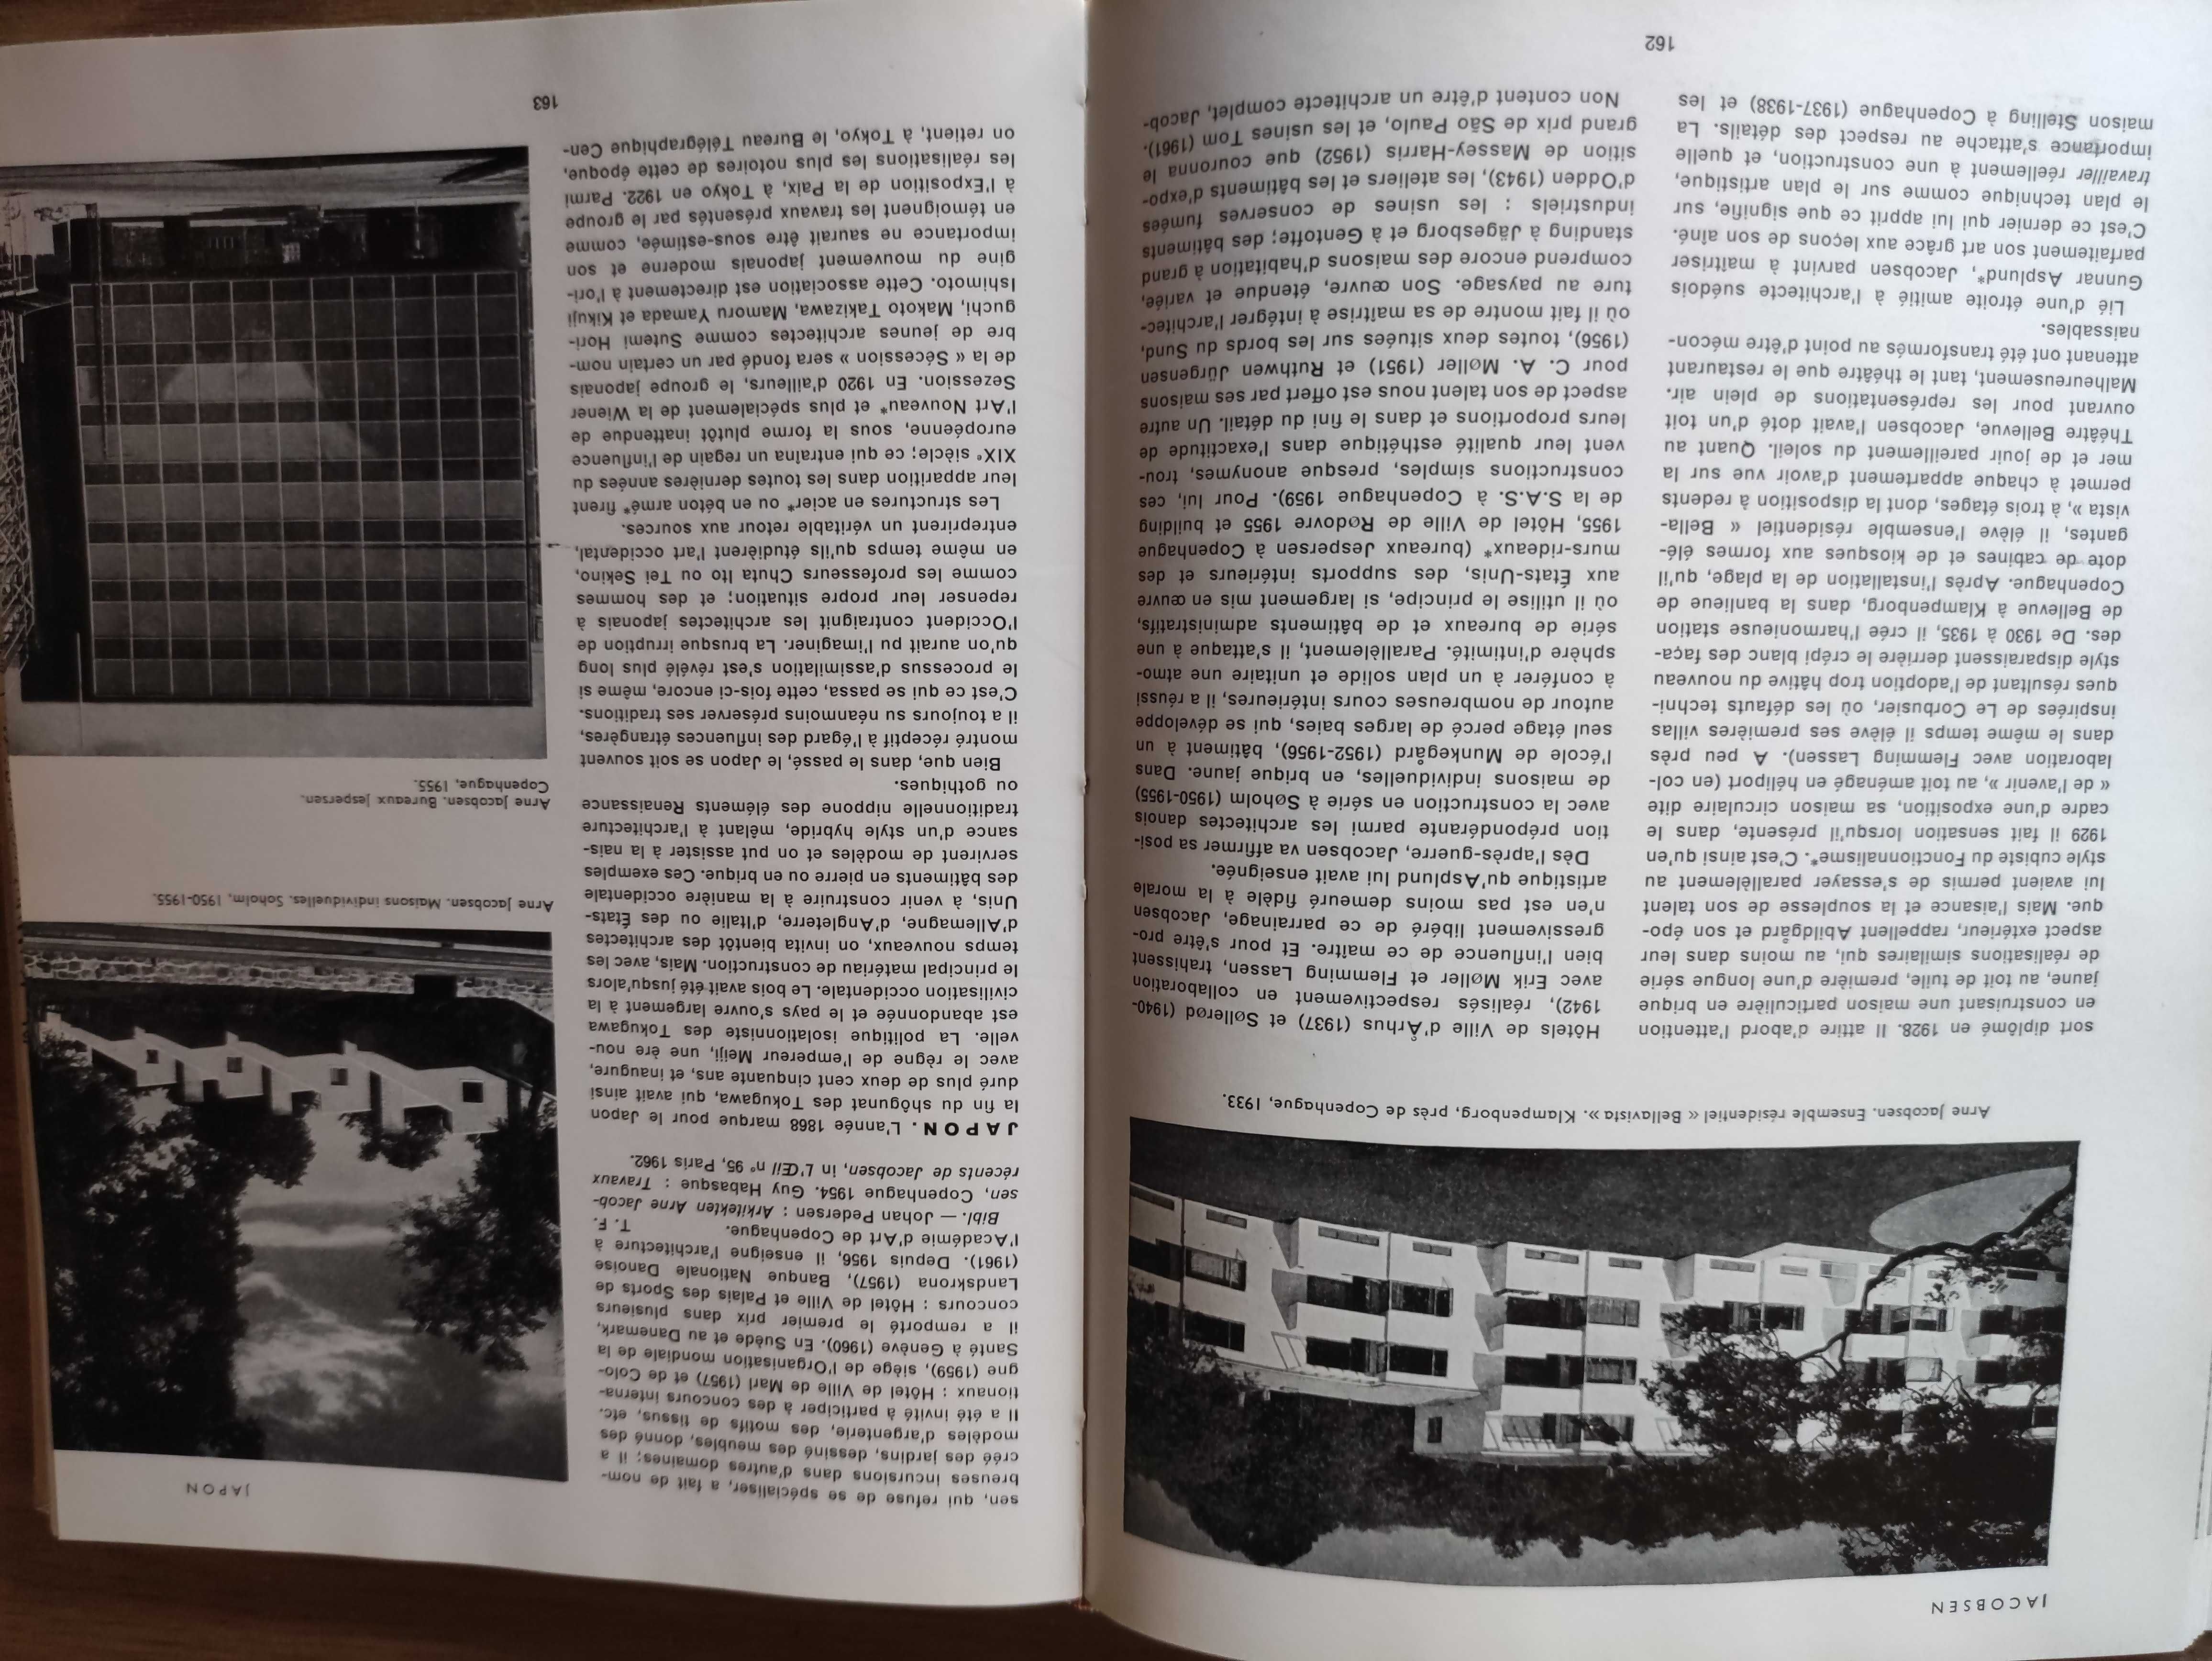 Dictionaire de l'architecture moderne - Fernand Hazan / unikat!